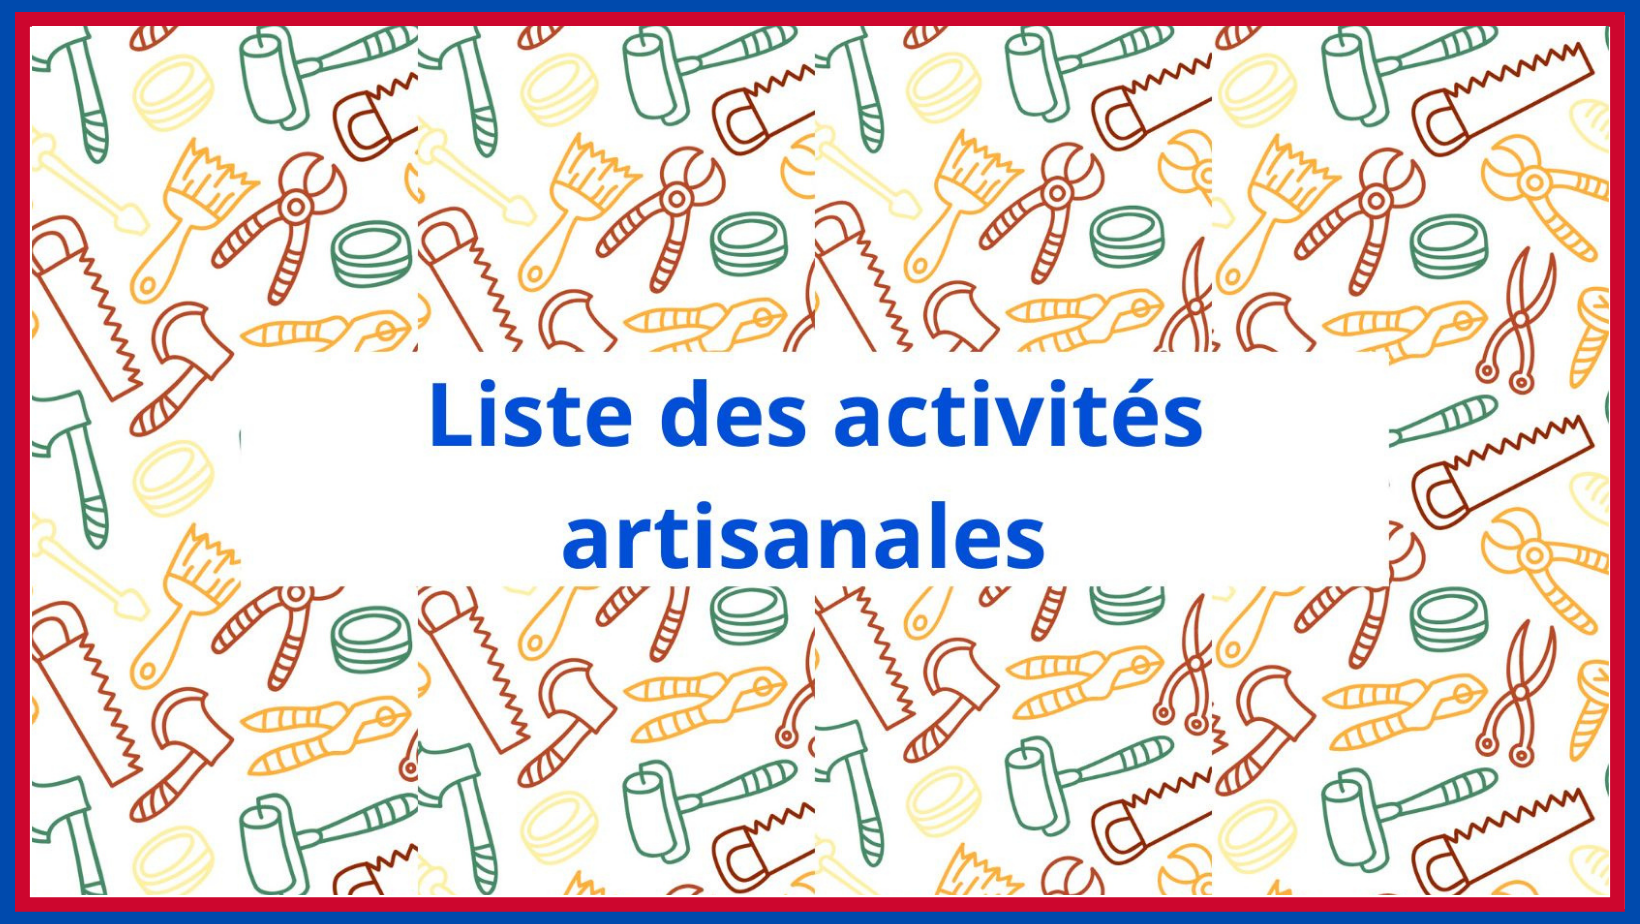 You are currently viewing La liste des activités artisanales